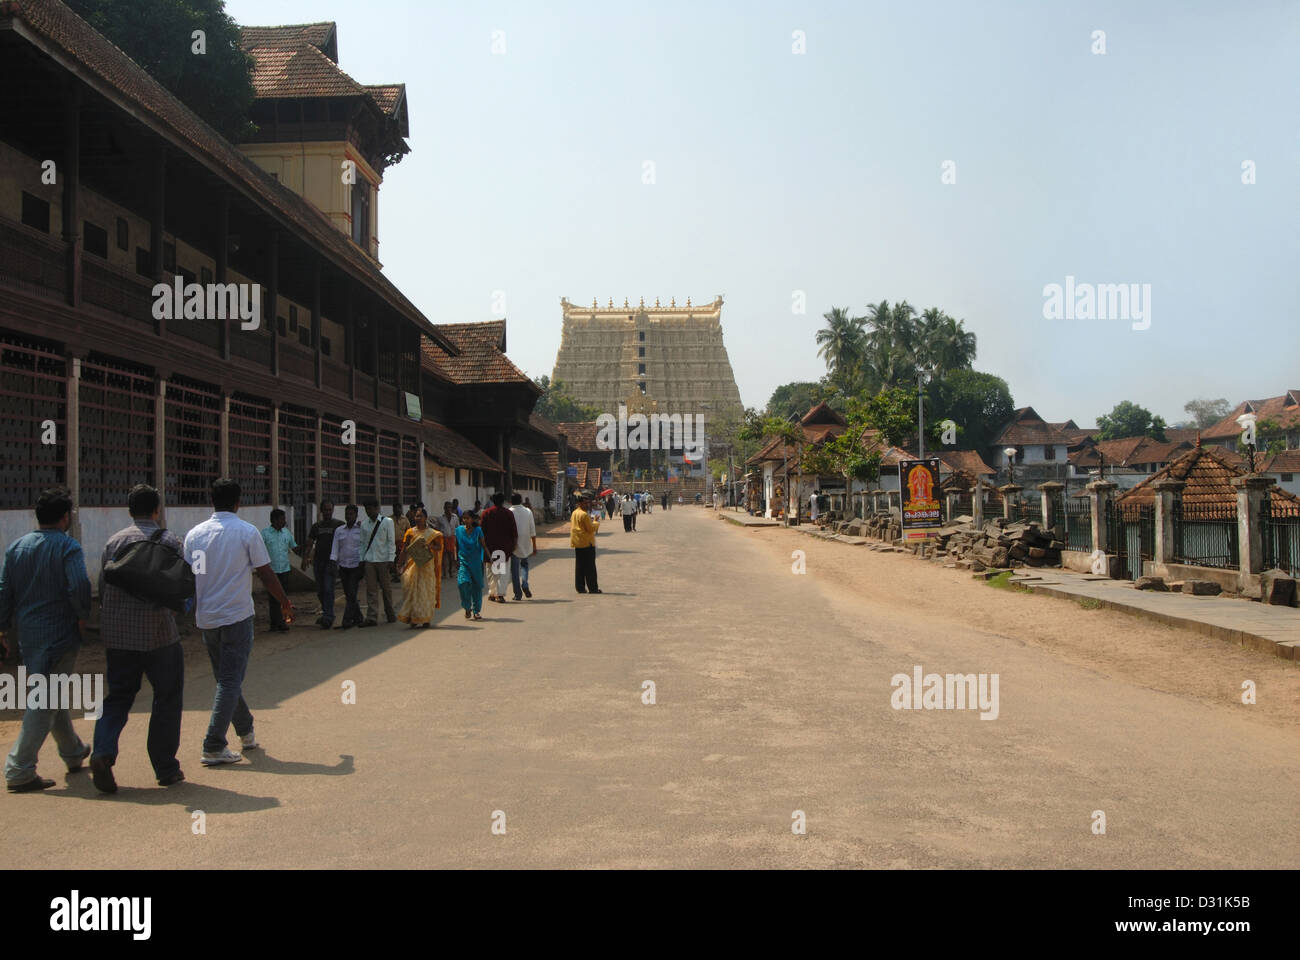 General-View of the Gopuram, main entrance of Shri Padmanabhaswamy temple Thiruvananthapuram, India. Stock Photo